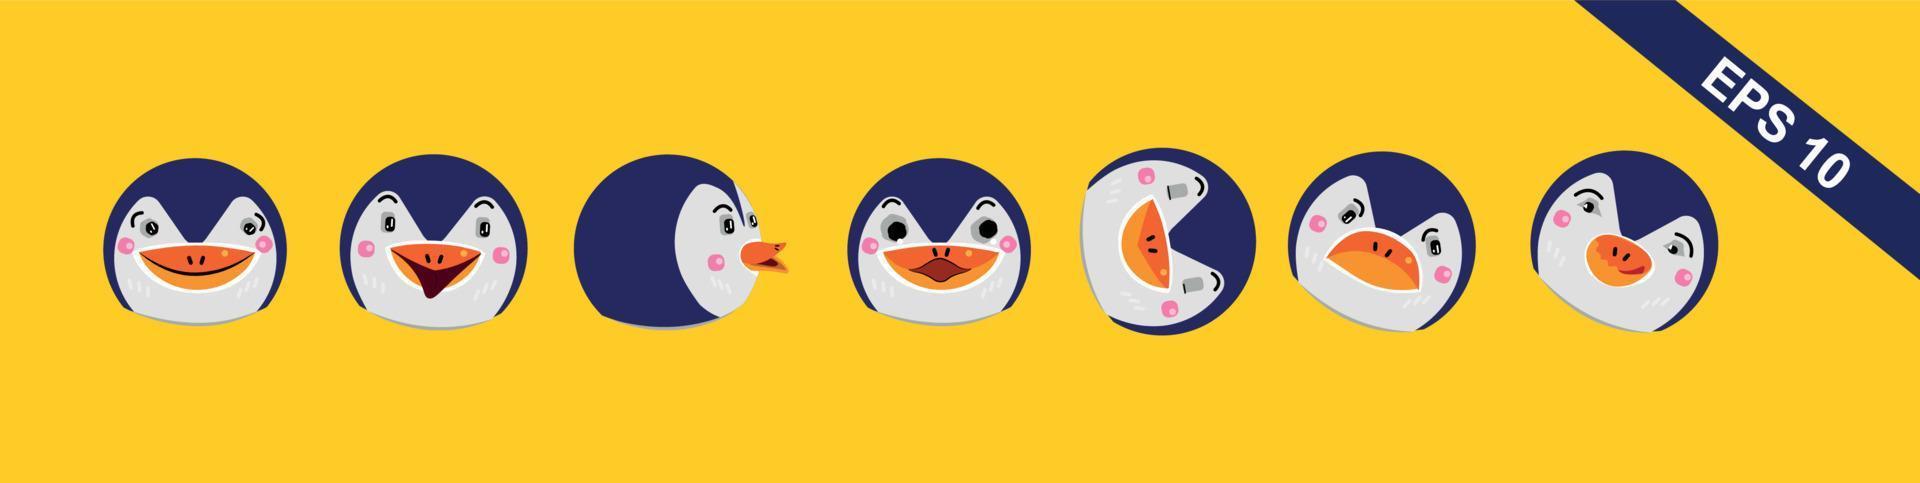 penguins face emotion vector set